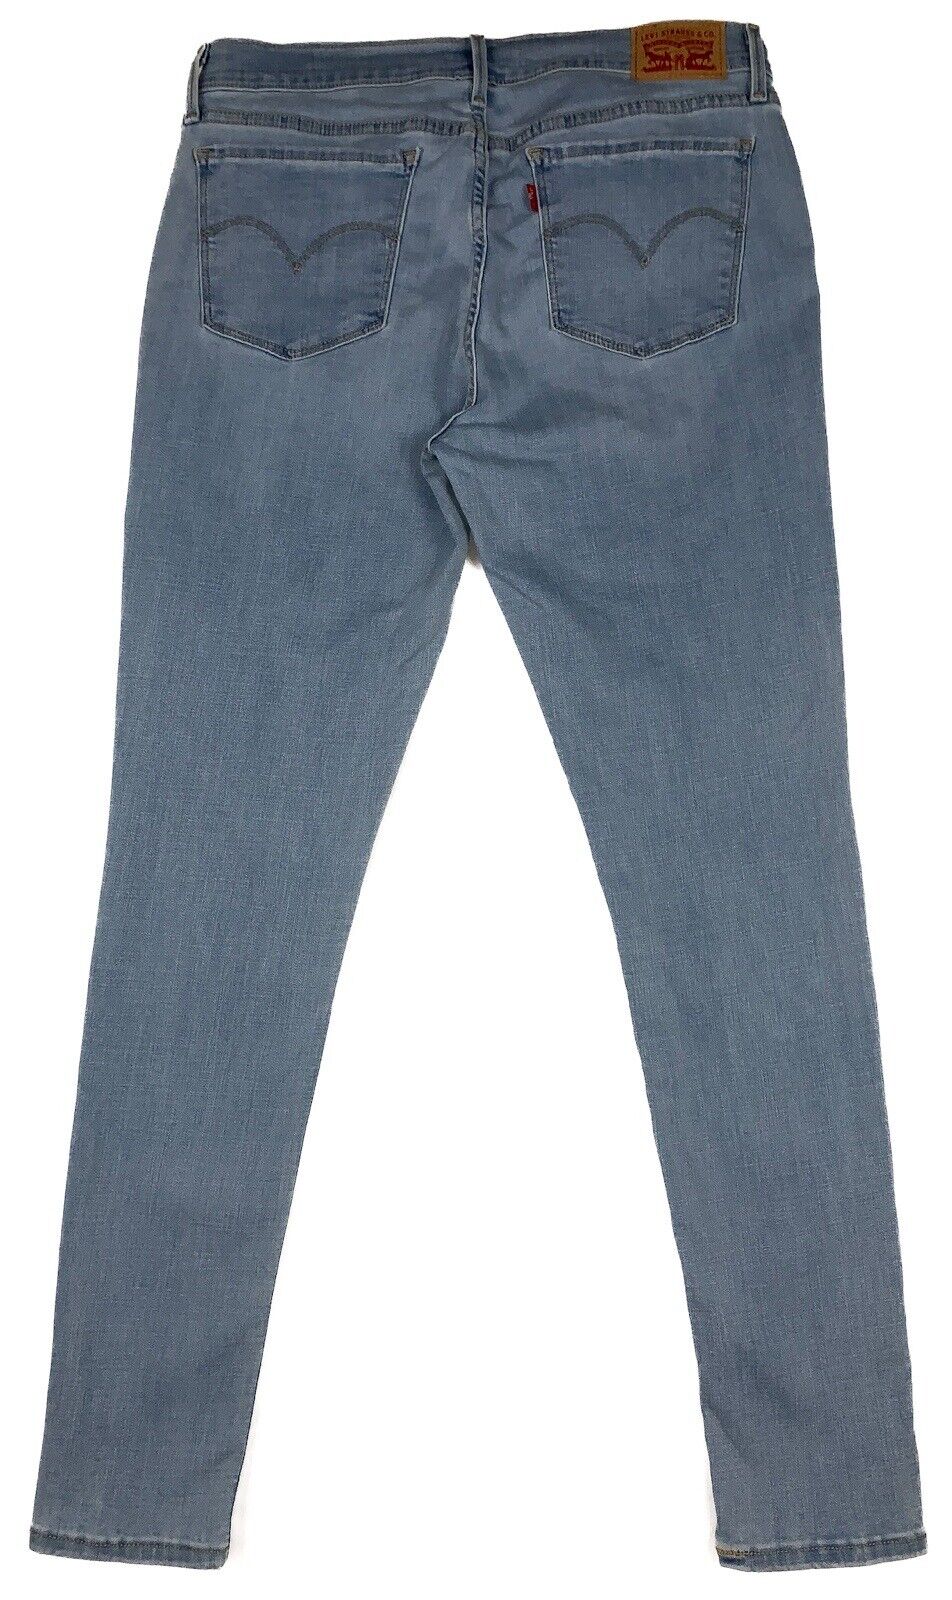 Levis 710 Super Skinny Jeans Light Wash Blue Stre… - image 2